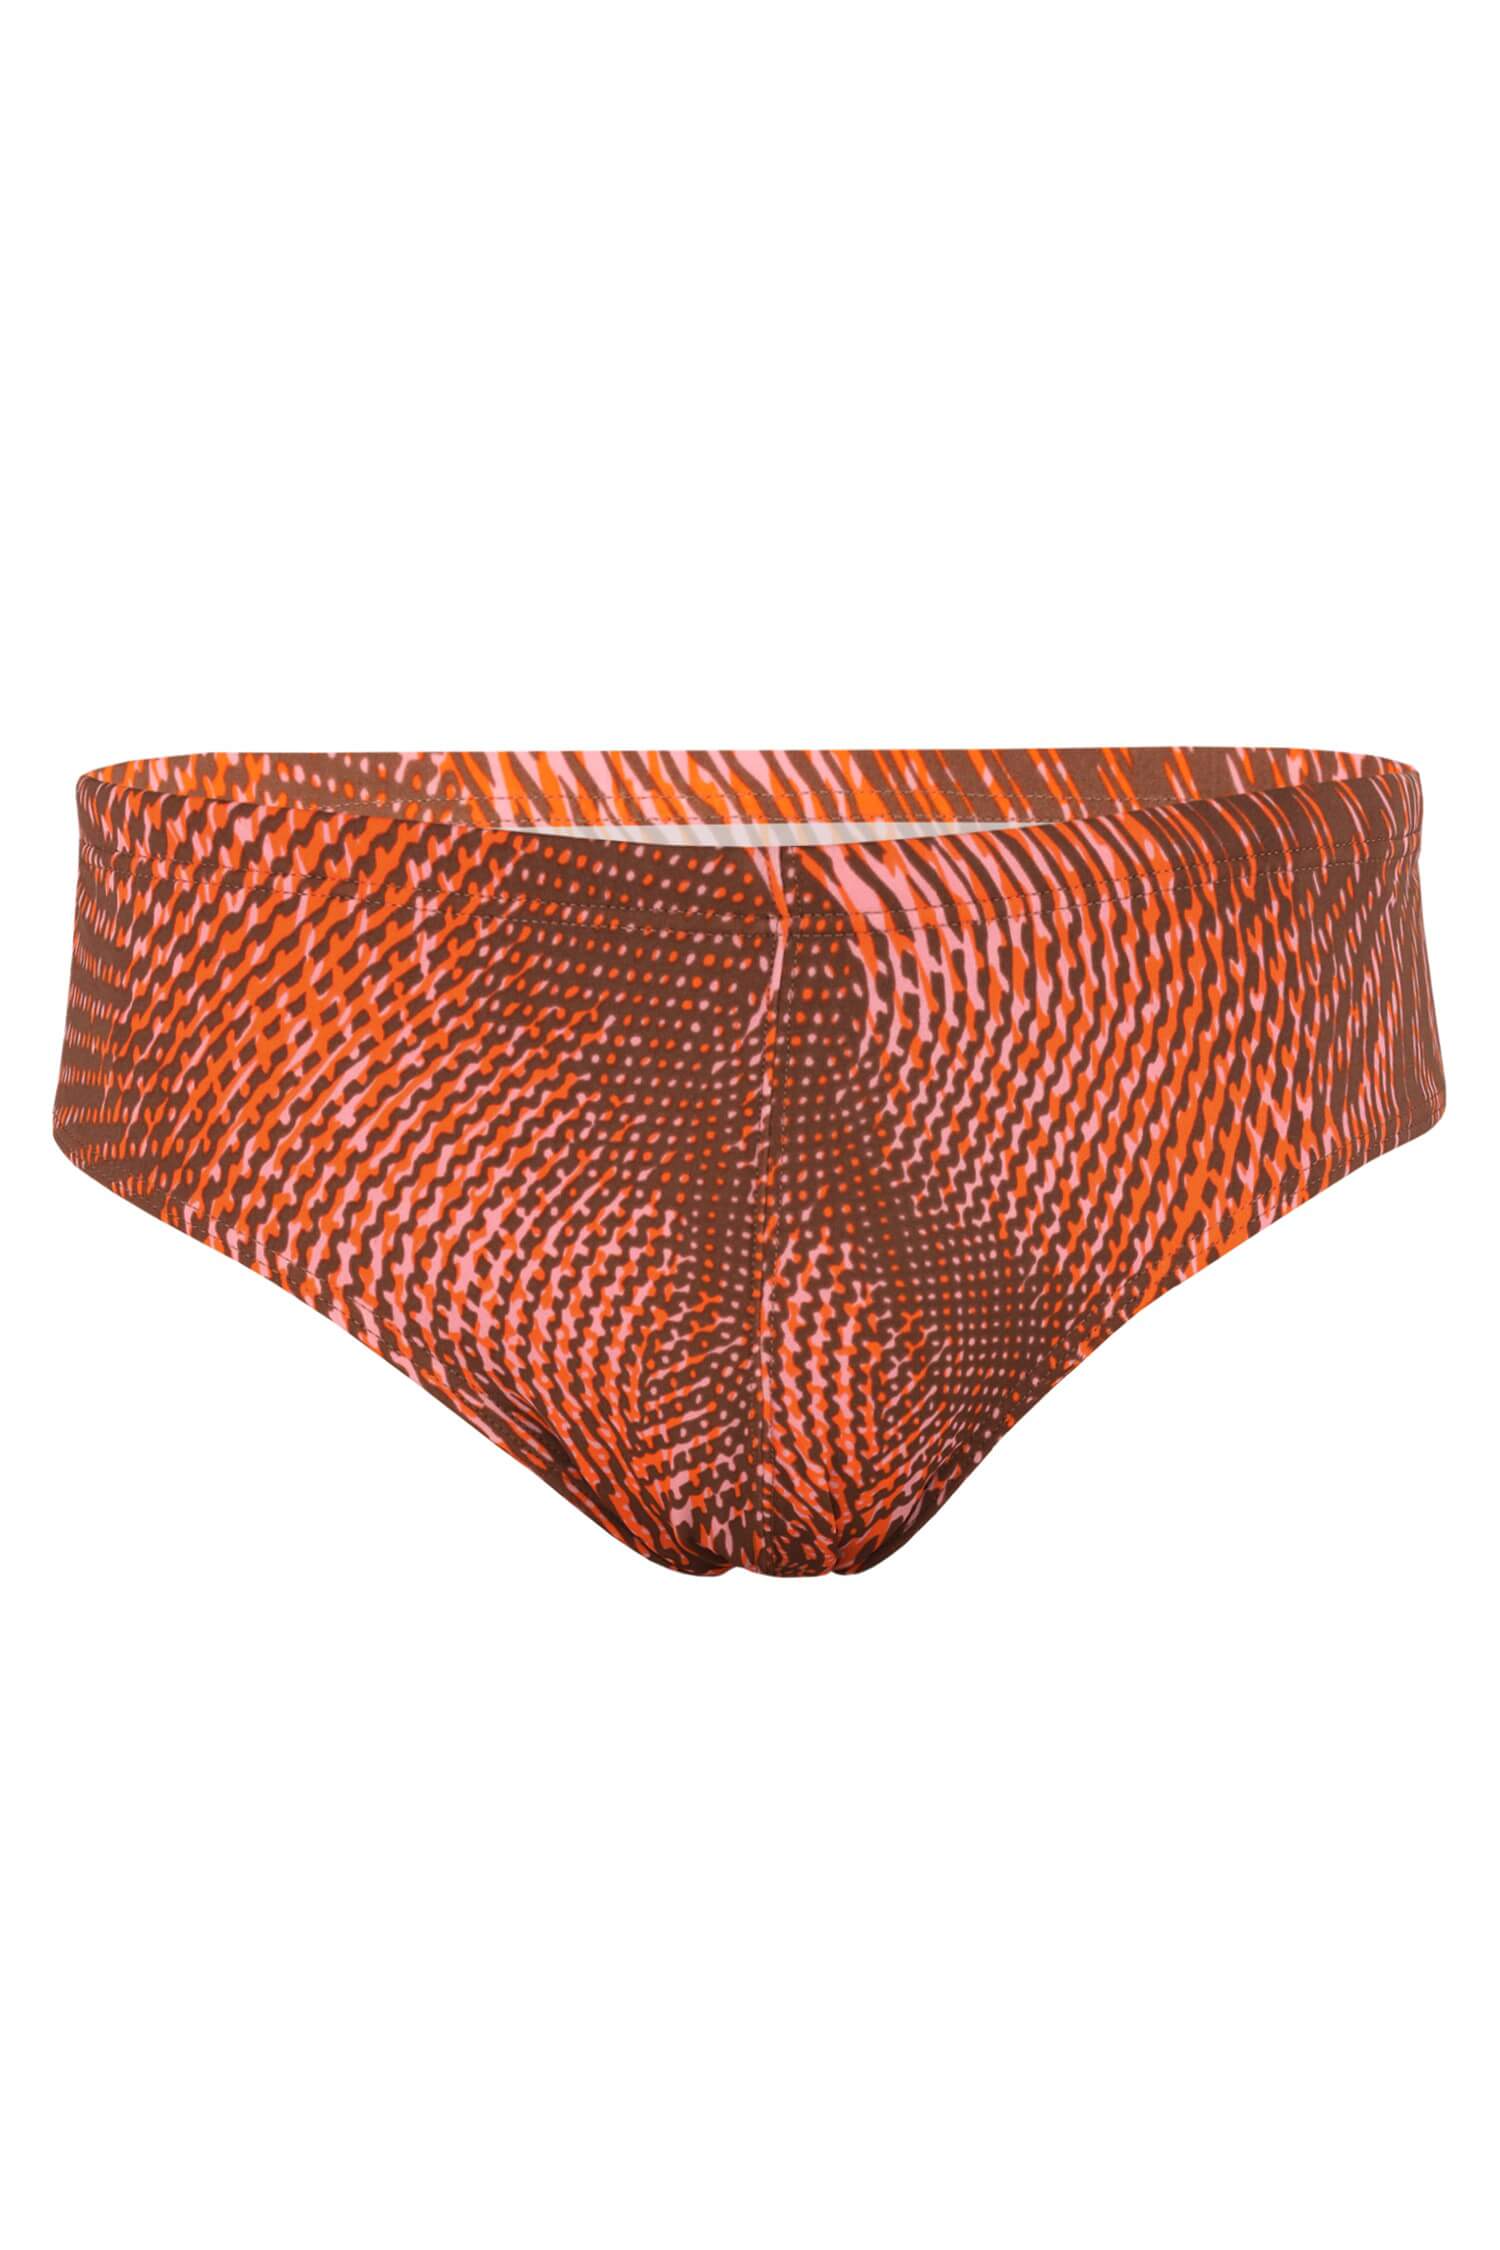 Retro ora pánské slipové plavky 003 M oranžová